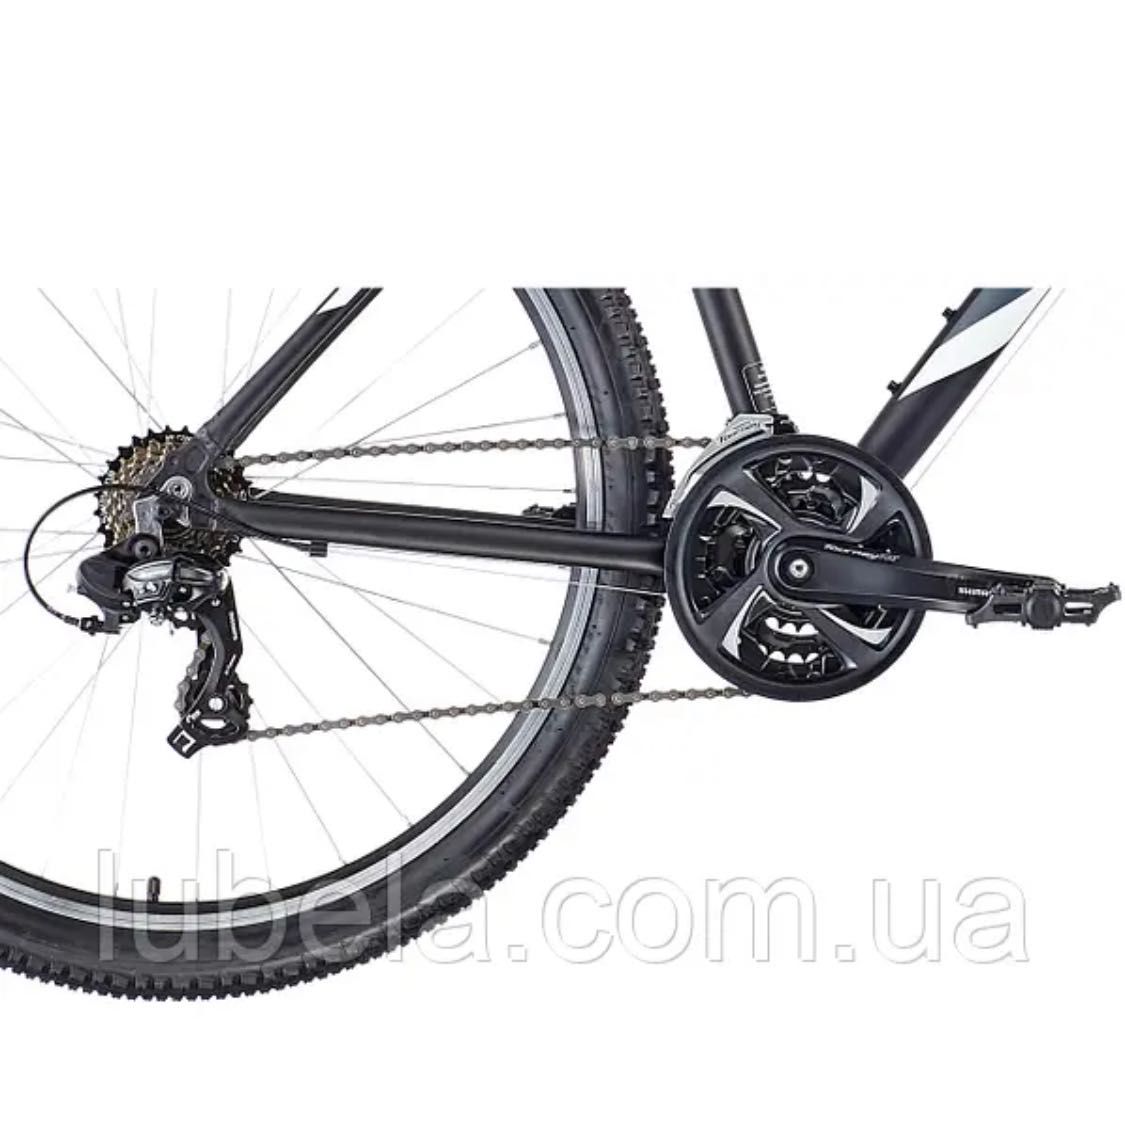 Гірський спортивний Велосипед Serious Rockville 27,5" чорно-сірий